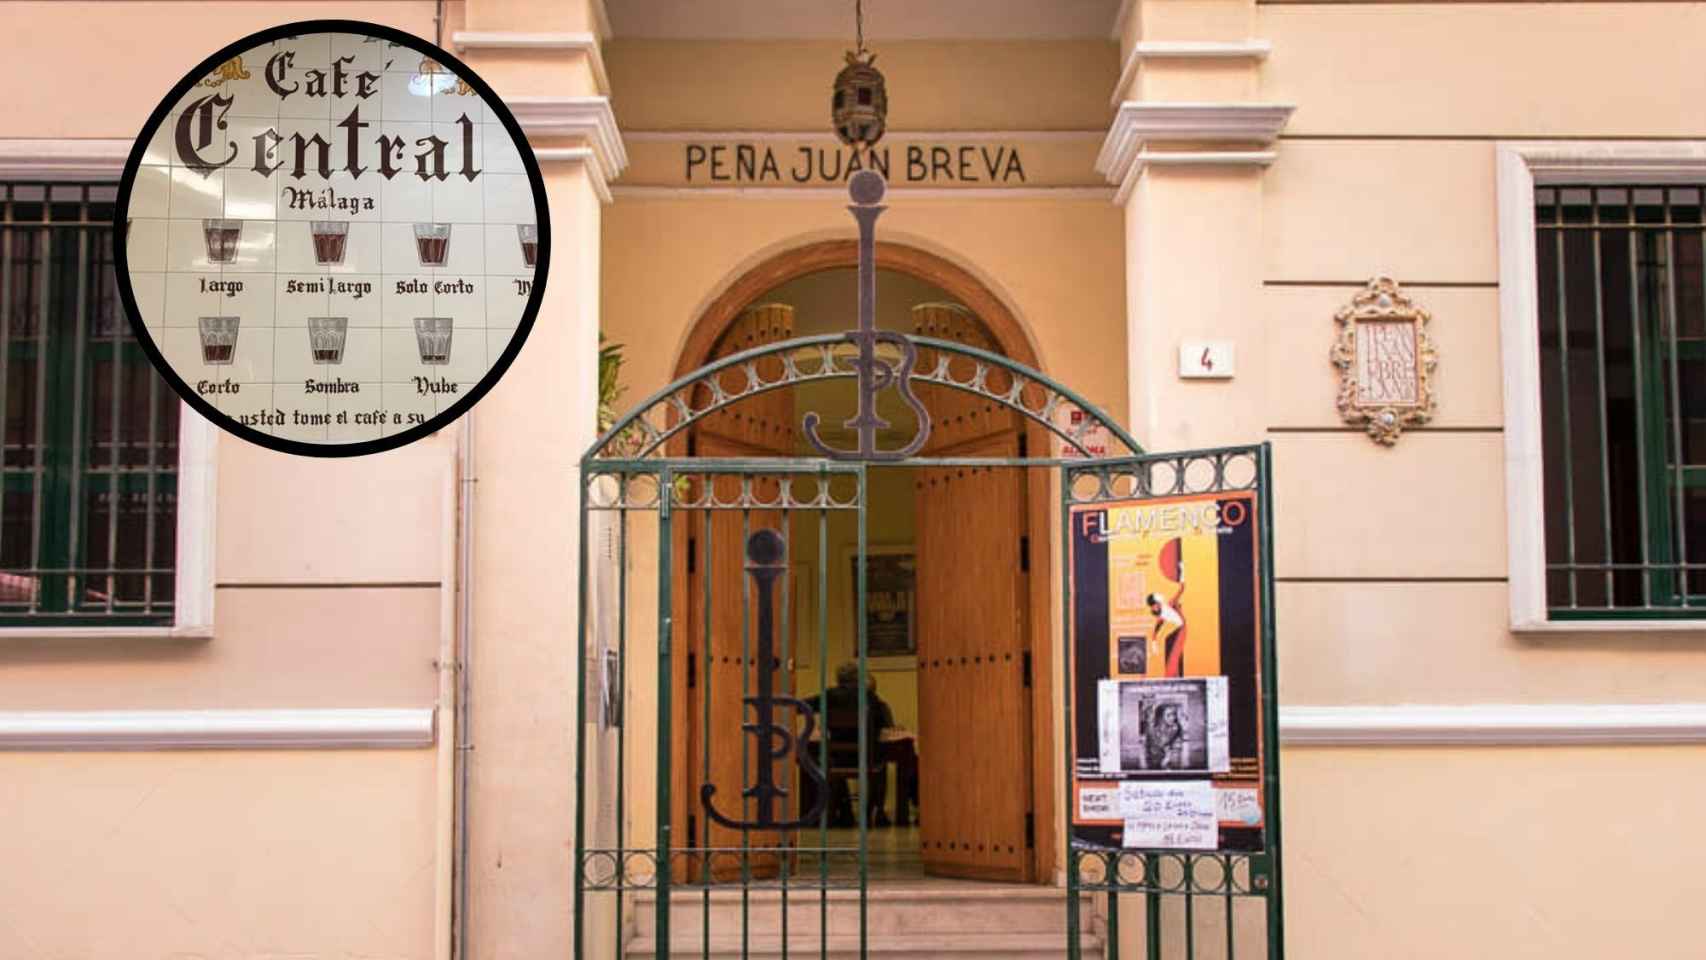 La fachada de la Peña Juan Breva y el mosaico del Central.